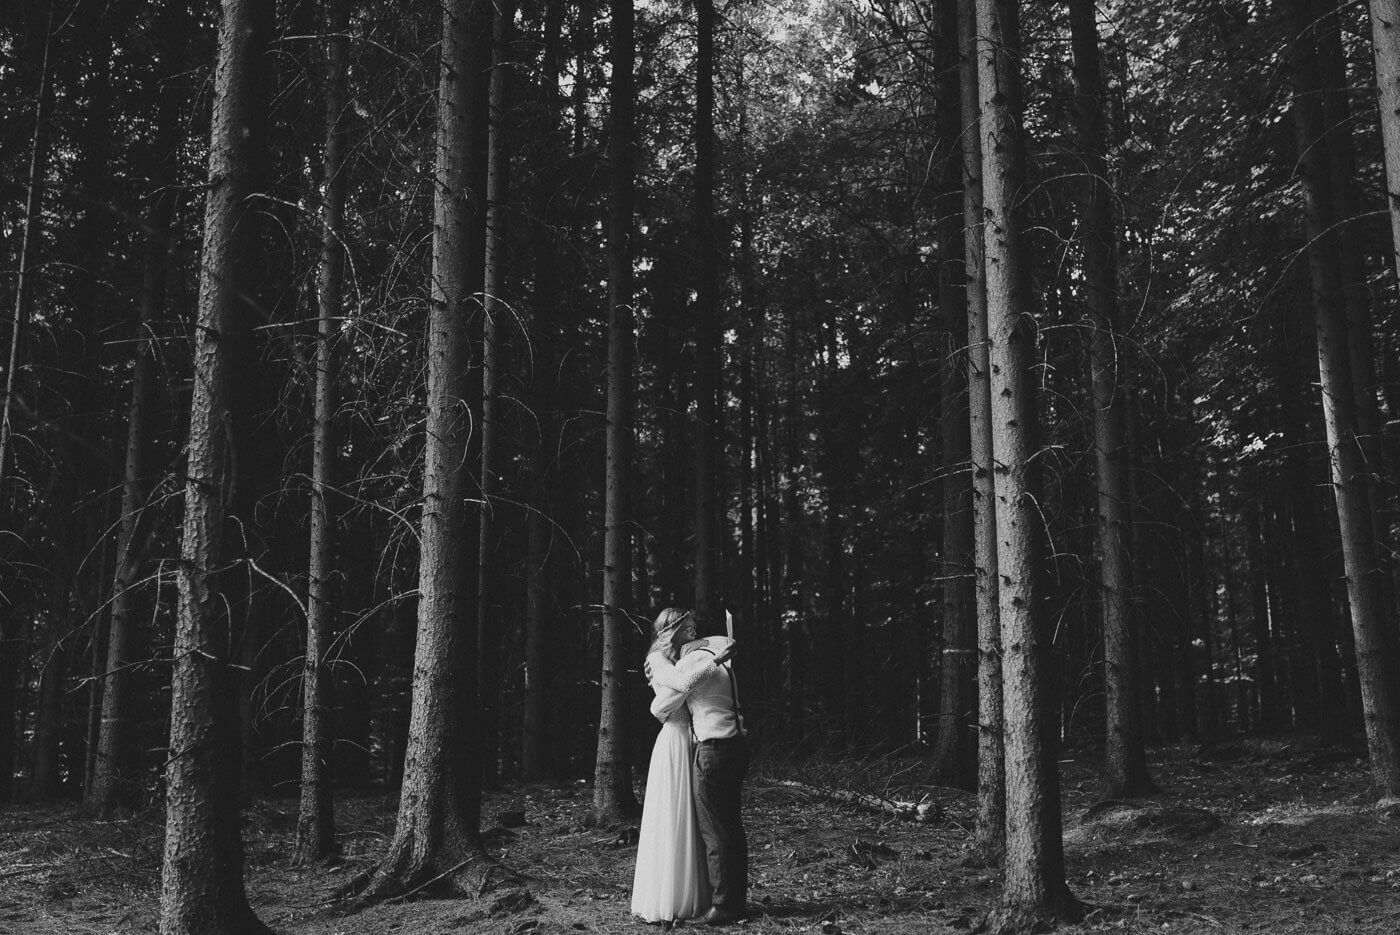 Brautpaar liest sich Trauversprechen alleine im Wald bei Forest Wedding vor und umarmt sich